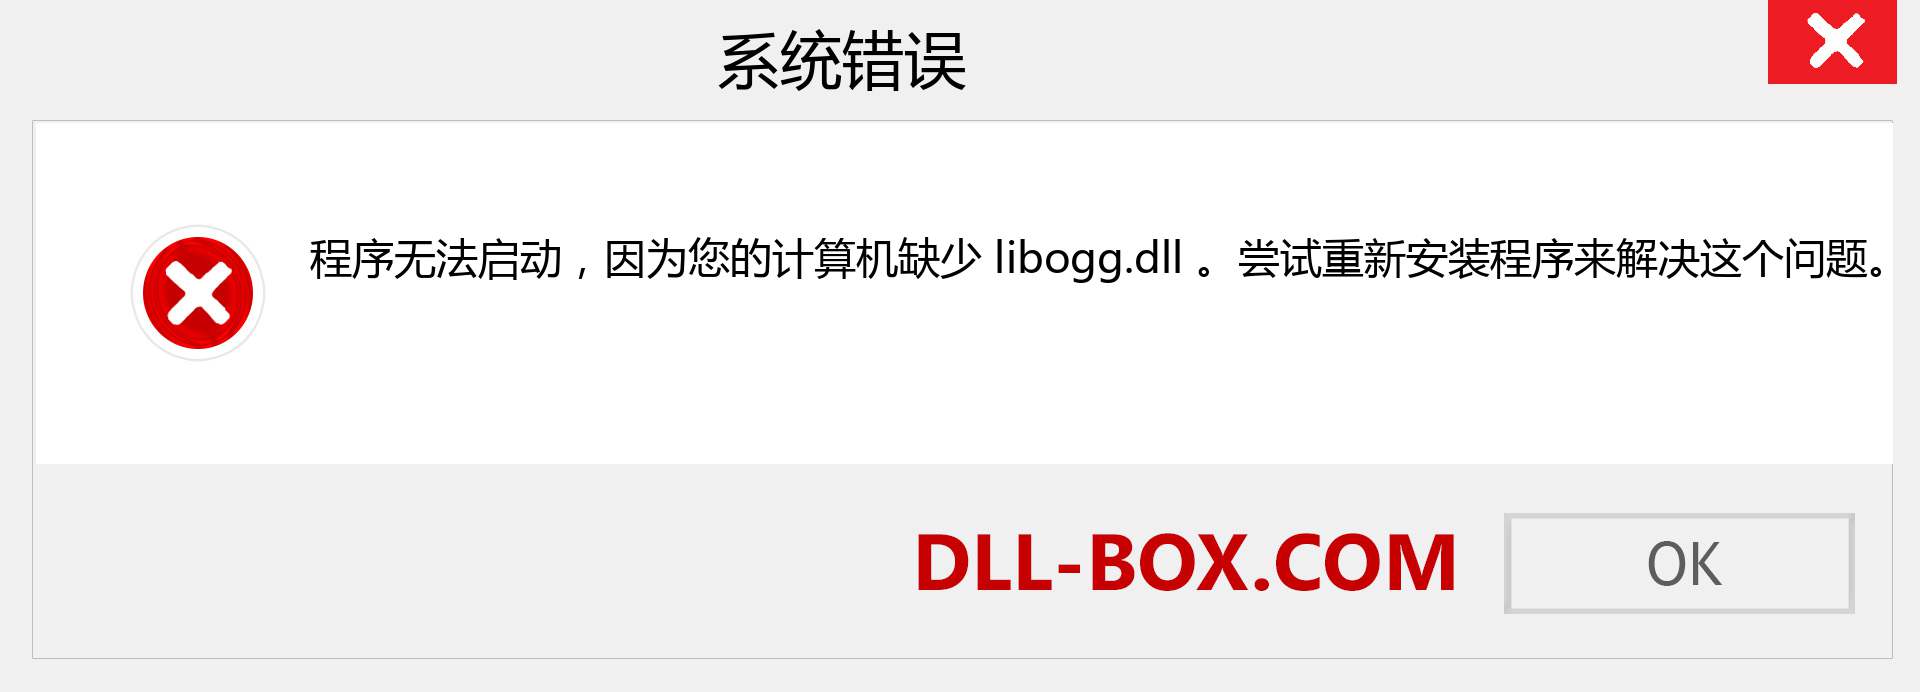 libogg.dll 文件丢失？。 适用于 Windows 7、8、10 的下载 - 修复 Windows、照片、图像上的 libogg dll 丢失错误